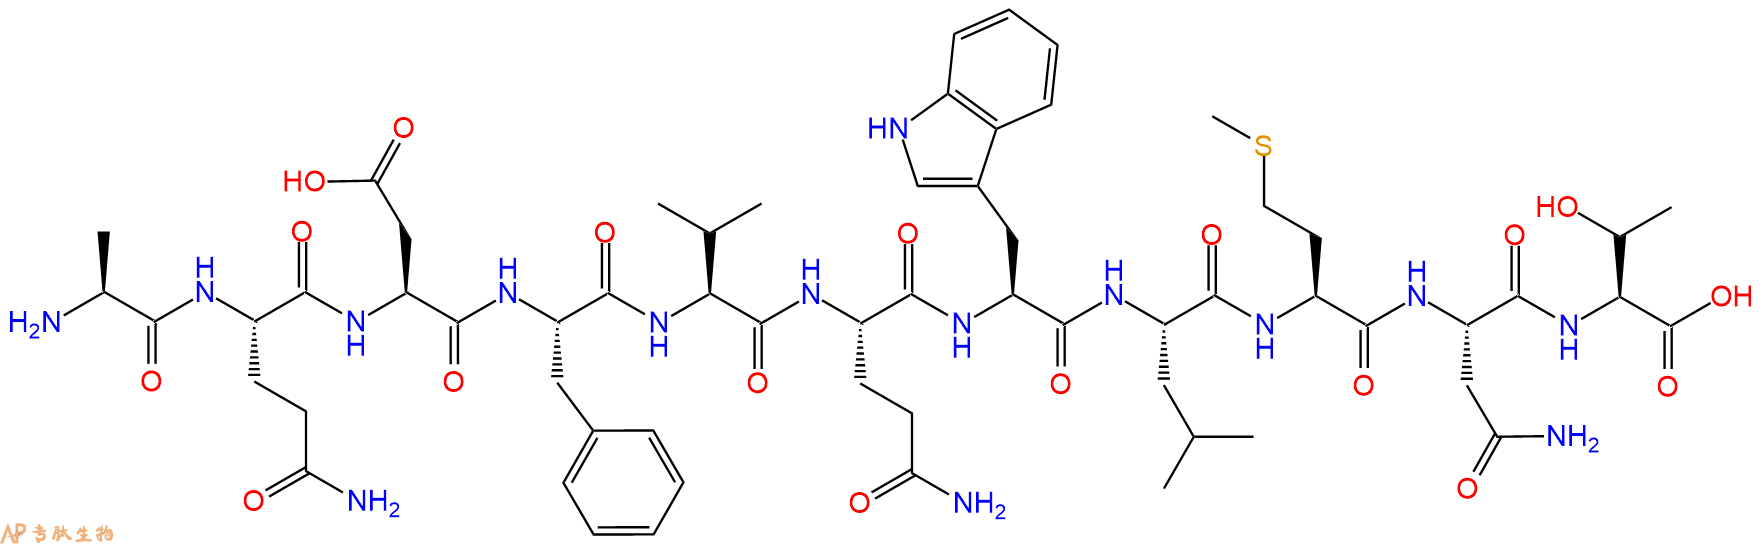 专肽生物产品胰高血糖素Glucagon (19-29) (human, rat, porcine)64790-15-4